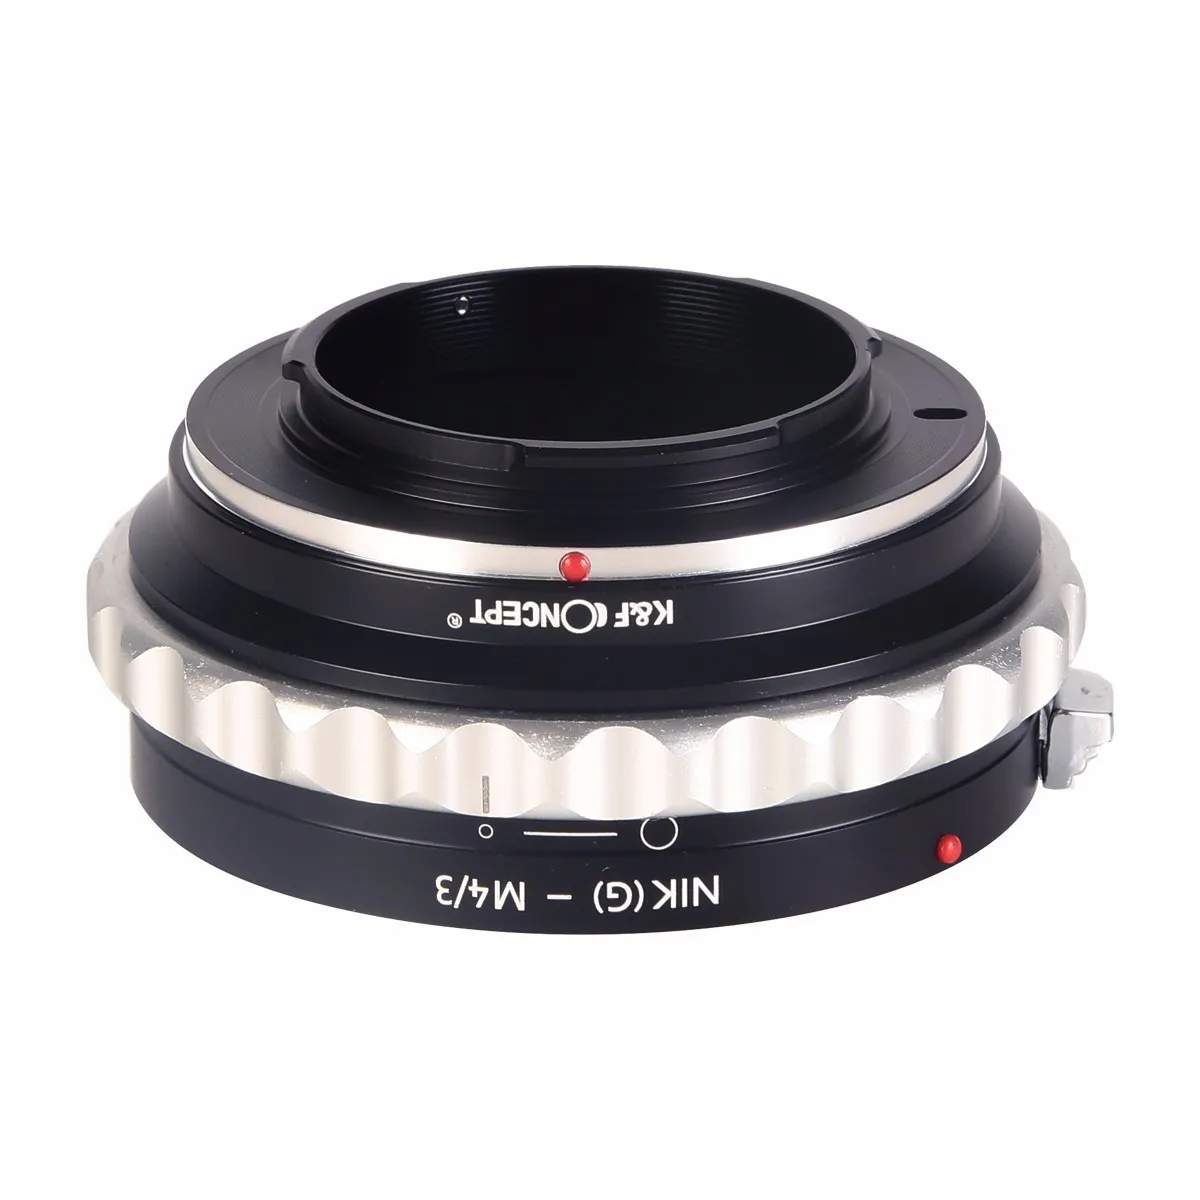 Переходное кольцо объектива для установки объектива Nikon с резъбой G 4/3 на цифровые зеркальные фатоаппараты с байонетом микро 4/3 Panasonic GX1 GH3 GH2 GH1 G10 G5 Olympus E-M5 E-PM2 E-PM1 E-PL5